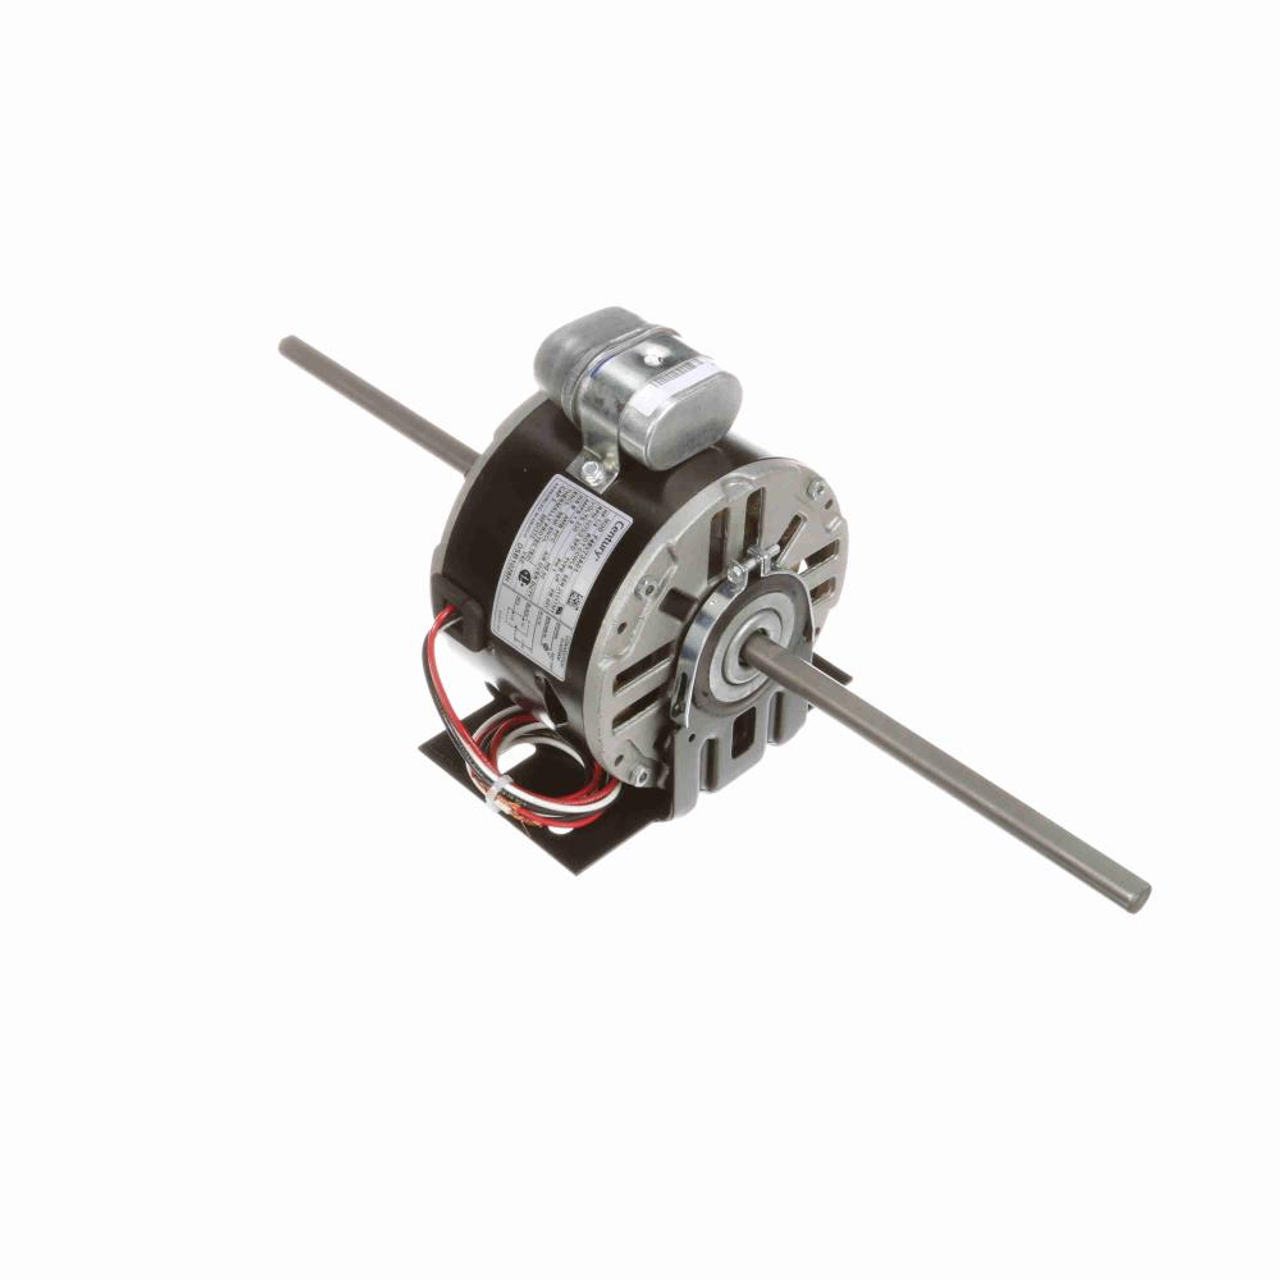 DSB1026H 5-5/8" Diameter Double Shaft Fan/Blower Motor 1/4 HP